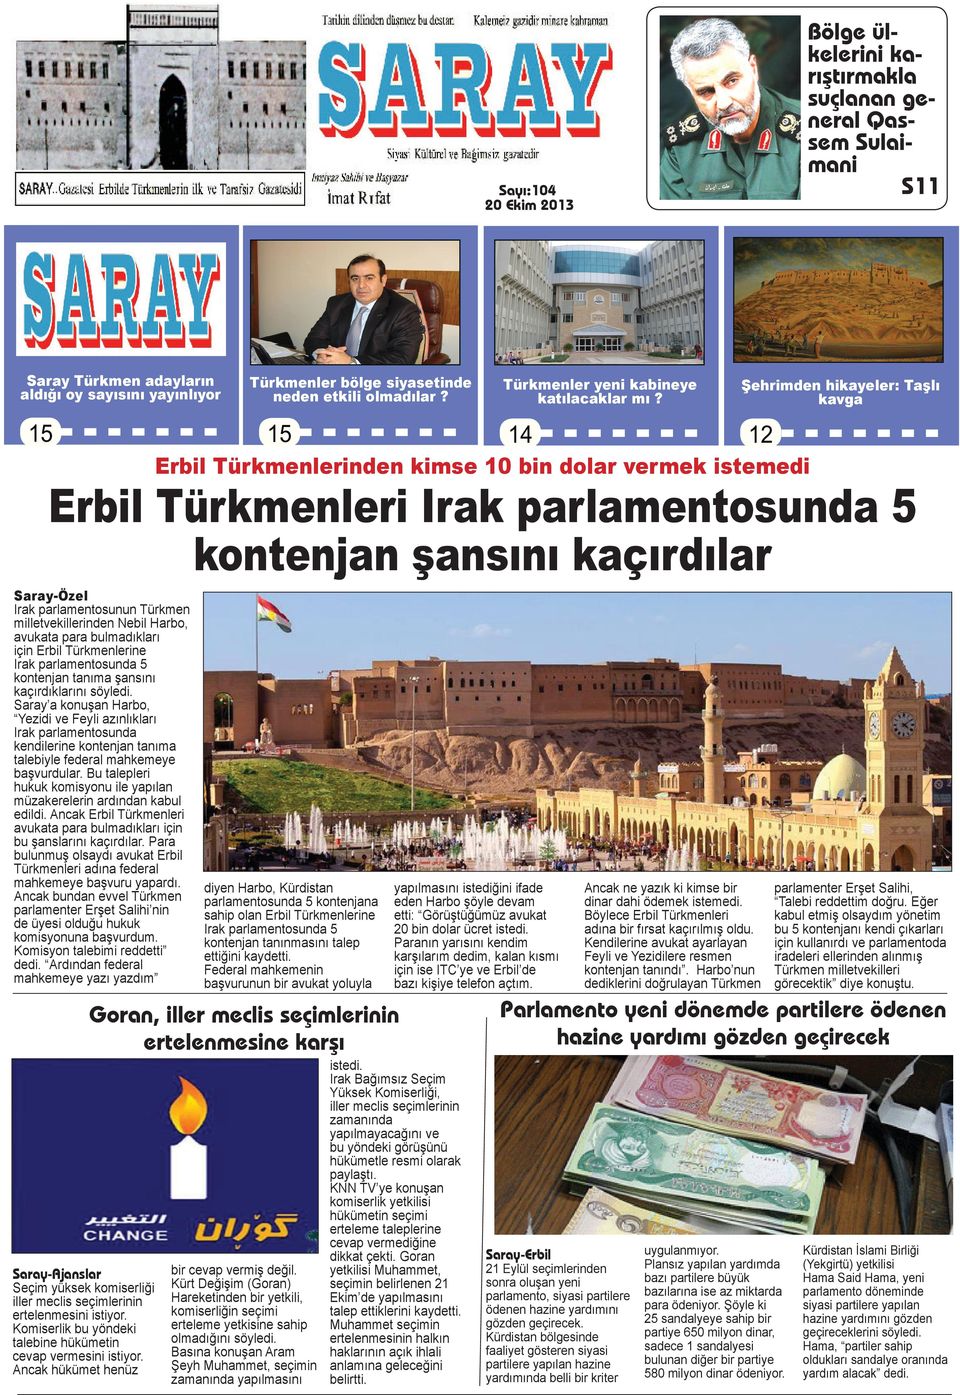 14 Şehrimden hikayeler: Taşlı kavga 12 Erbil Türkmenlerinden kimse 10 bin dolar vermek istemedi Erbil Türkmenleri Irak parlamentosunda 5 kontenjan şansını kaçırdılar Saray-Özel Irak parlamentosunun